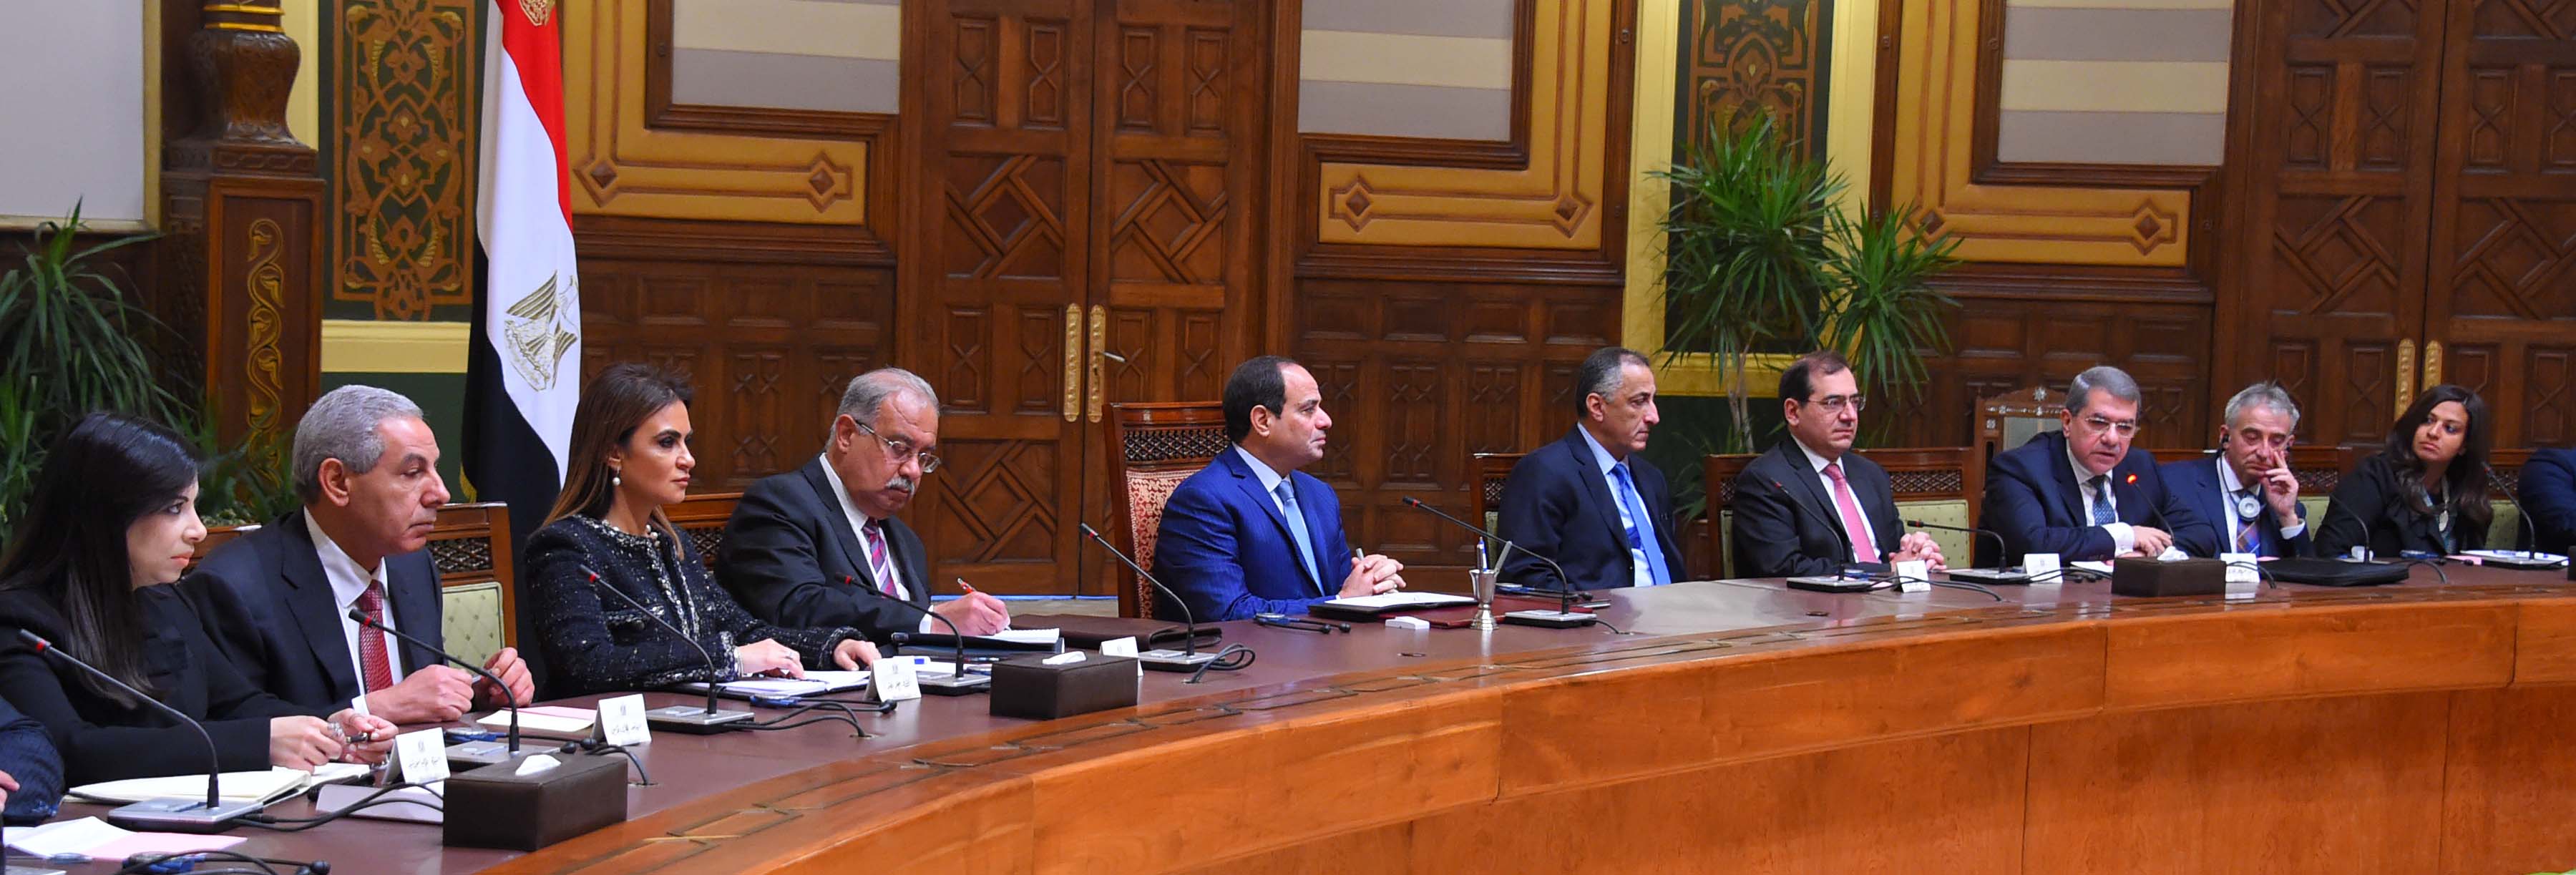 الرئيس السيسى يستعرض جهود إصلاح الاقتصاد المصرى أمام كبار صناديق الاستثمار